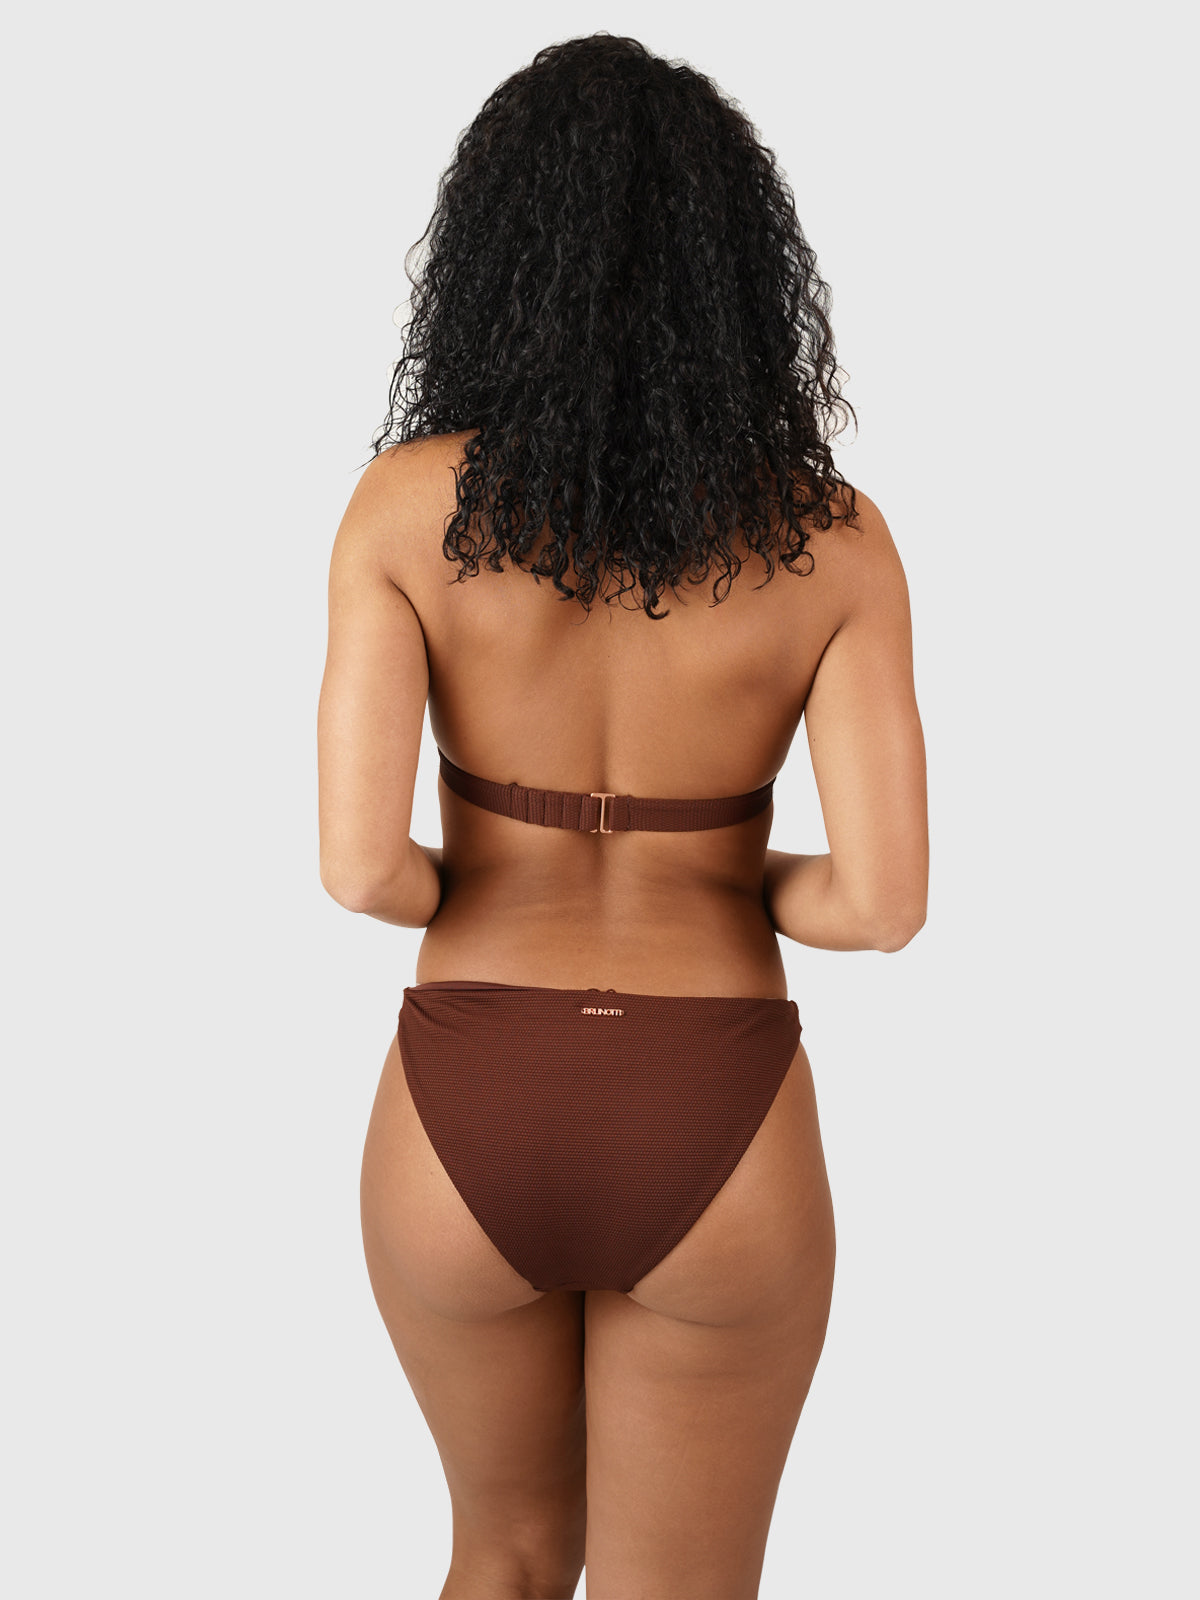 Kohali-STR Women Bralette Bikini Set | Brown